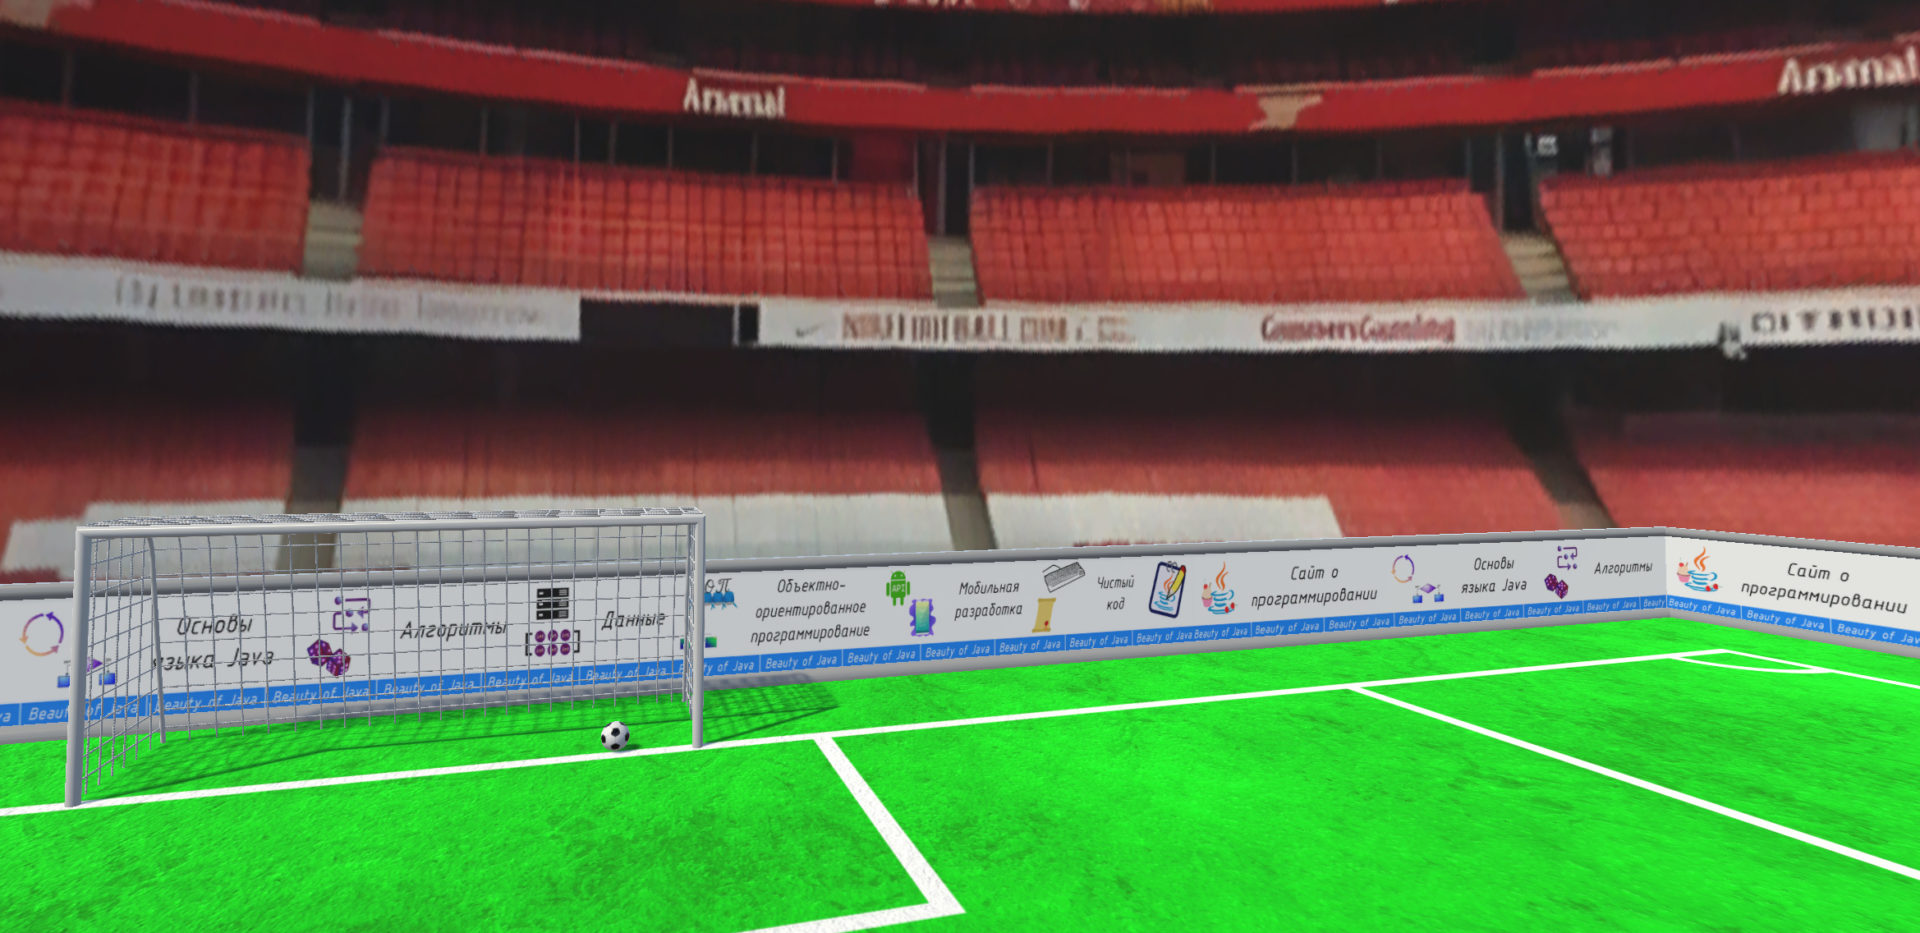 Сайт о программировании Beauty of Java размещён на рекламном баннере вокруг футбольного поля на стадионе